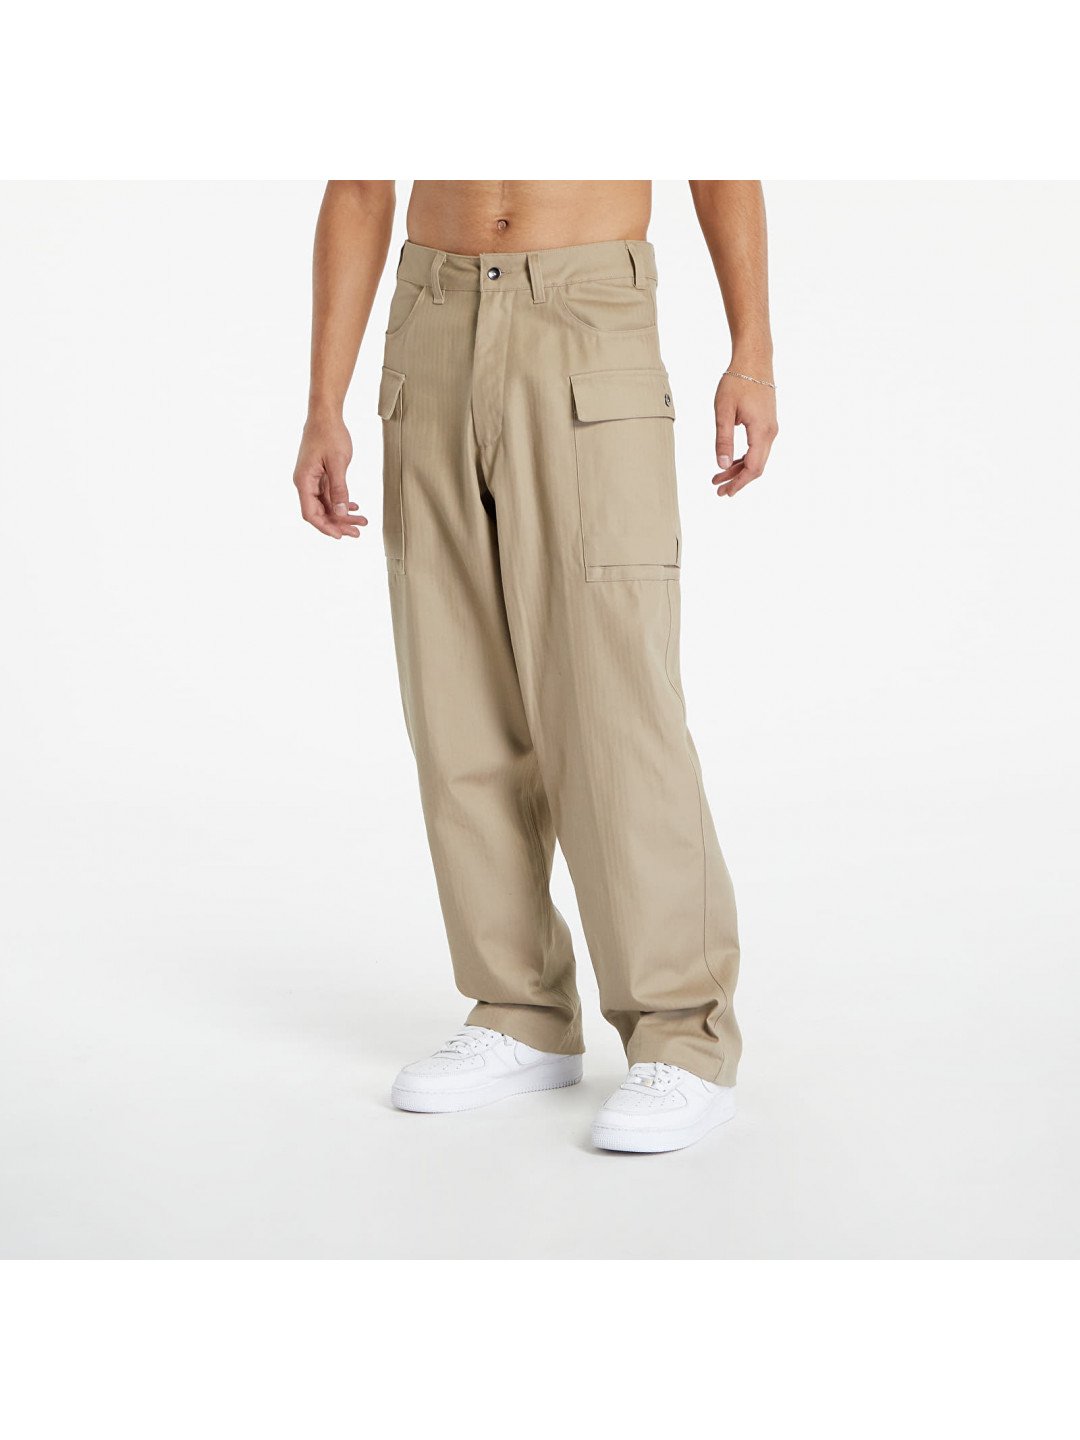 Nike Life Men s Cargo Pants Khaki Khaki